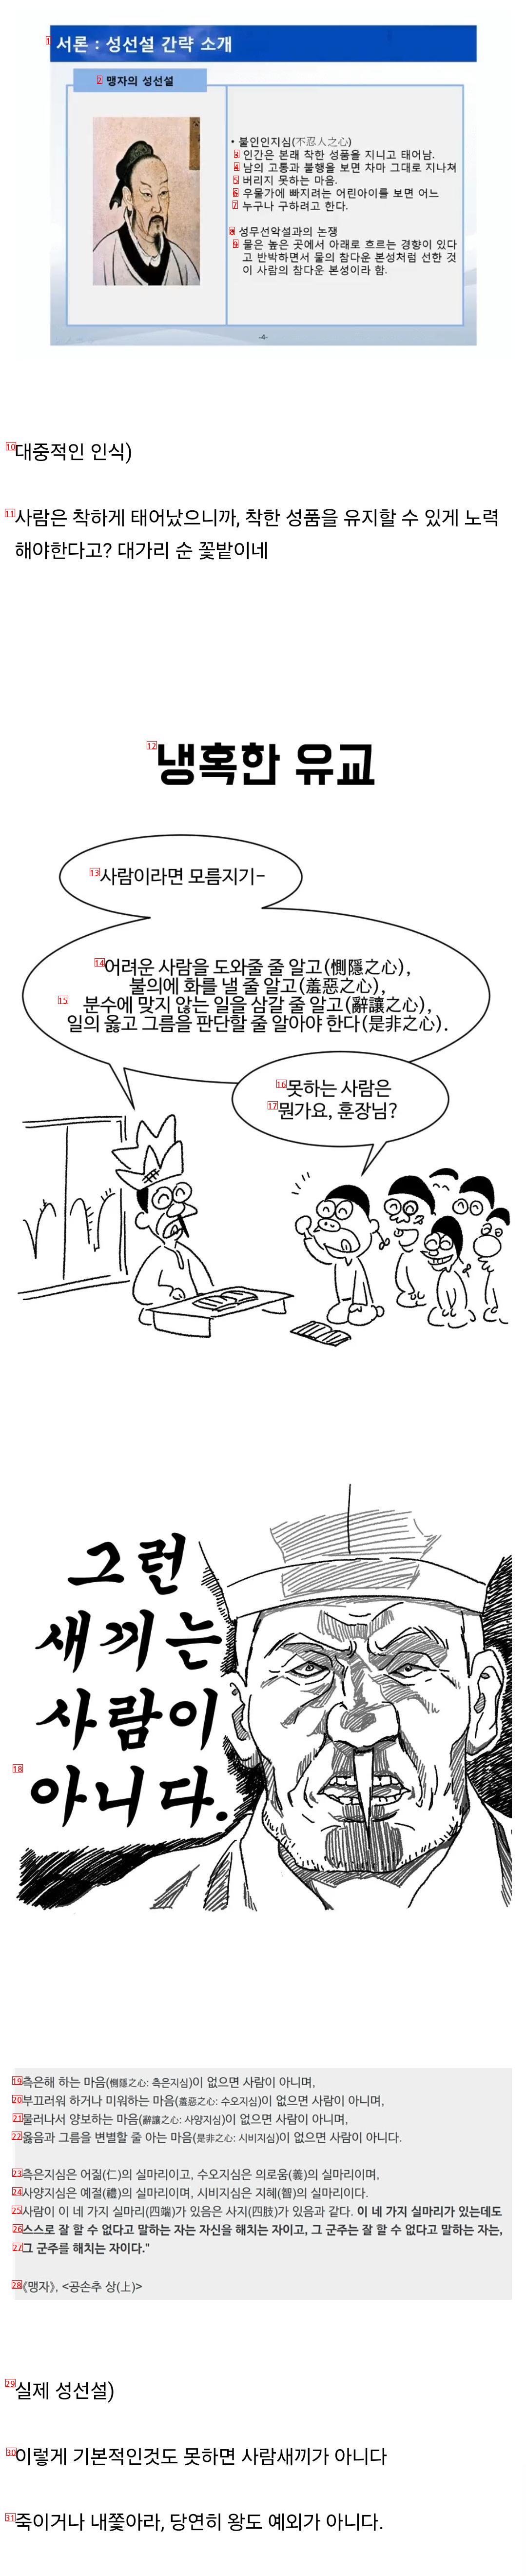 유교에서 말하는 성선설의 진실...